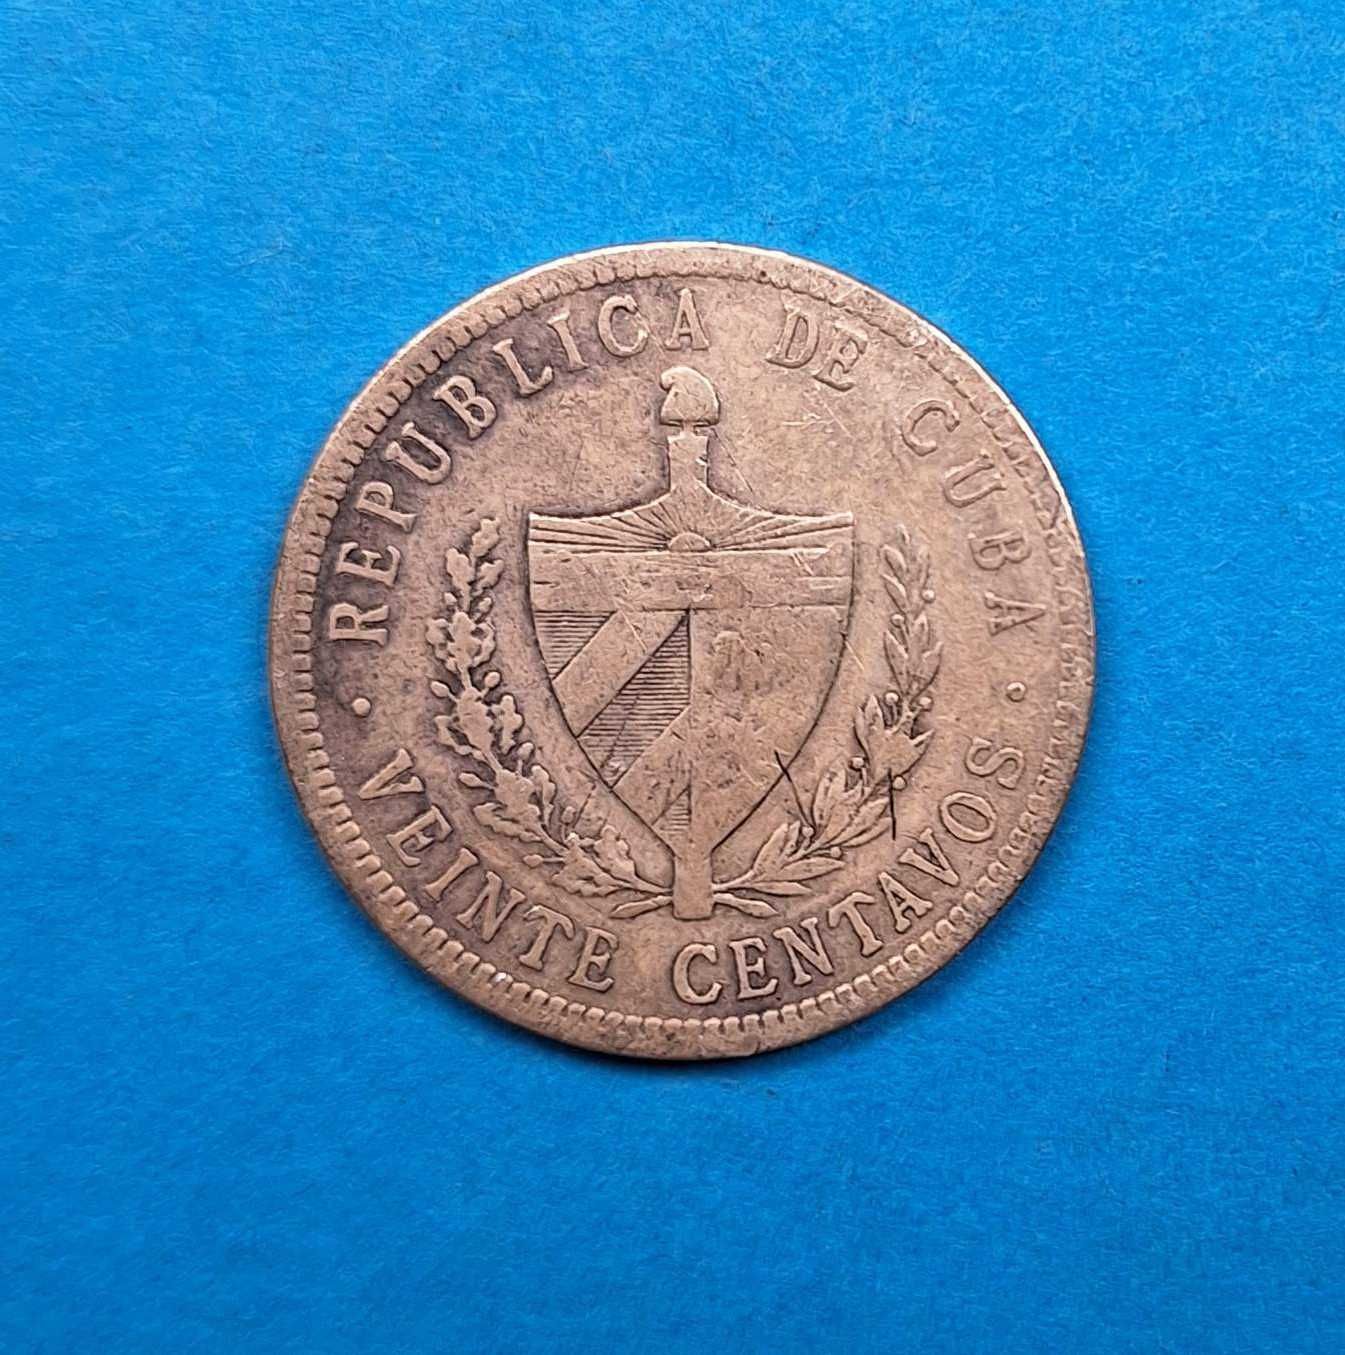 Kuba 20 centavo rok 1915, dobry stan, srebro 0,900